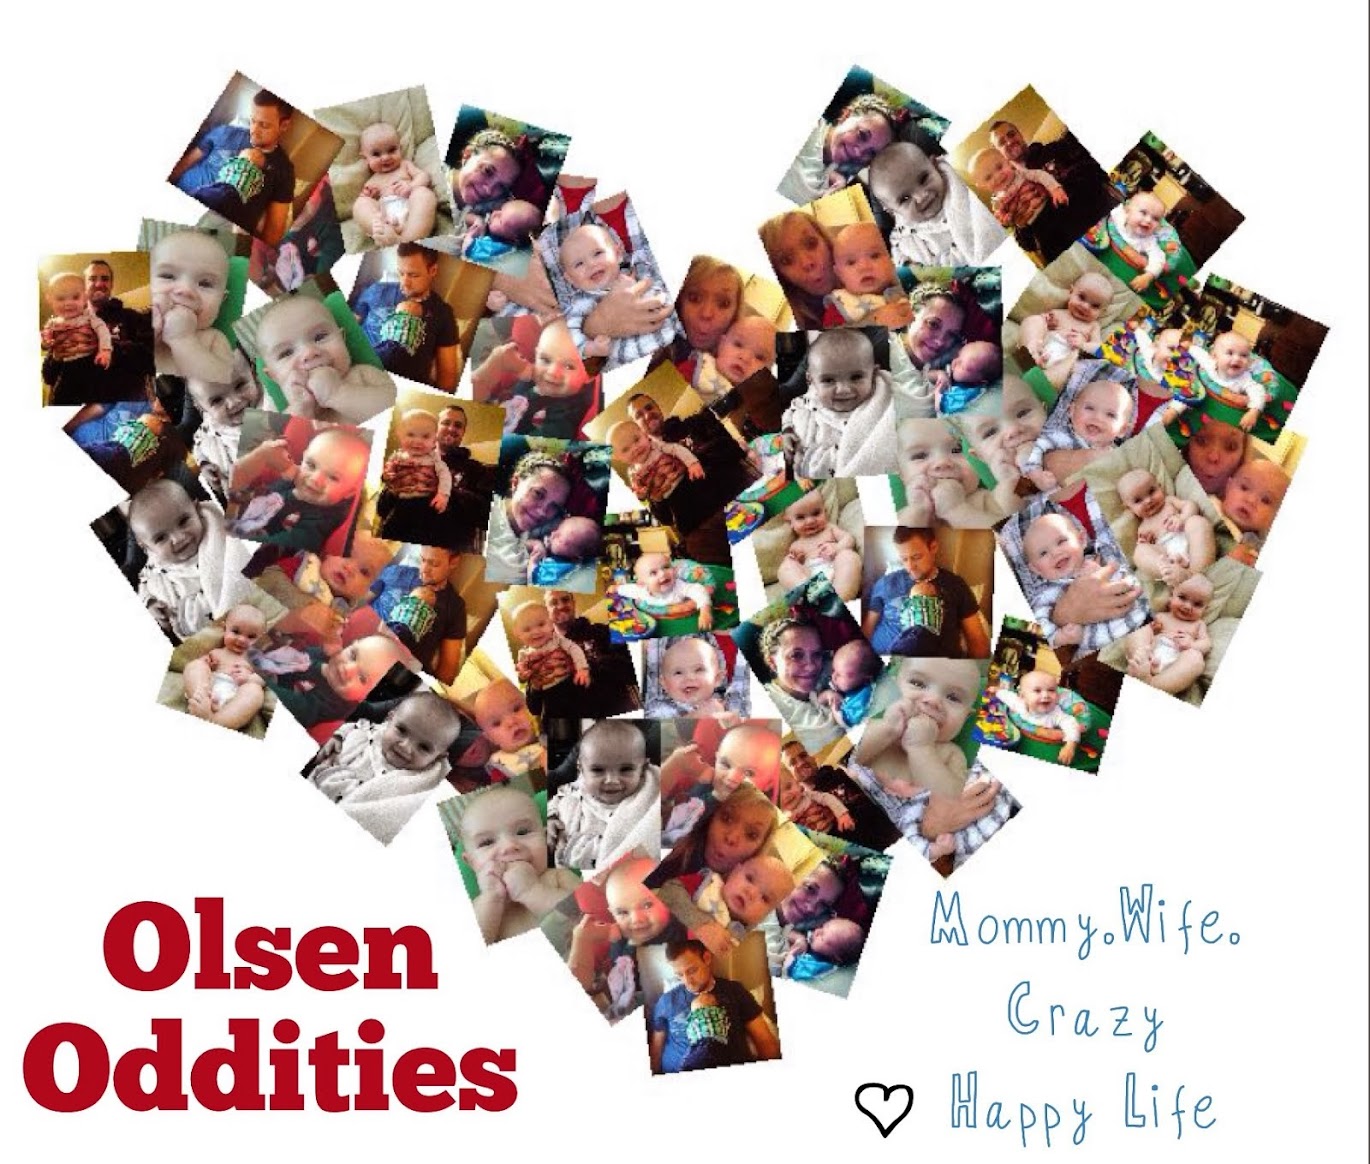 Olsen Oddities